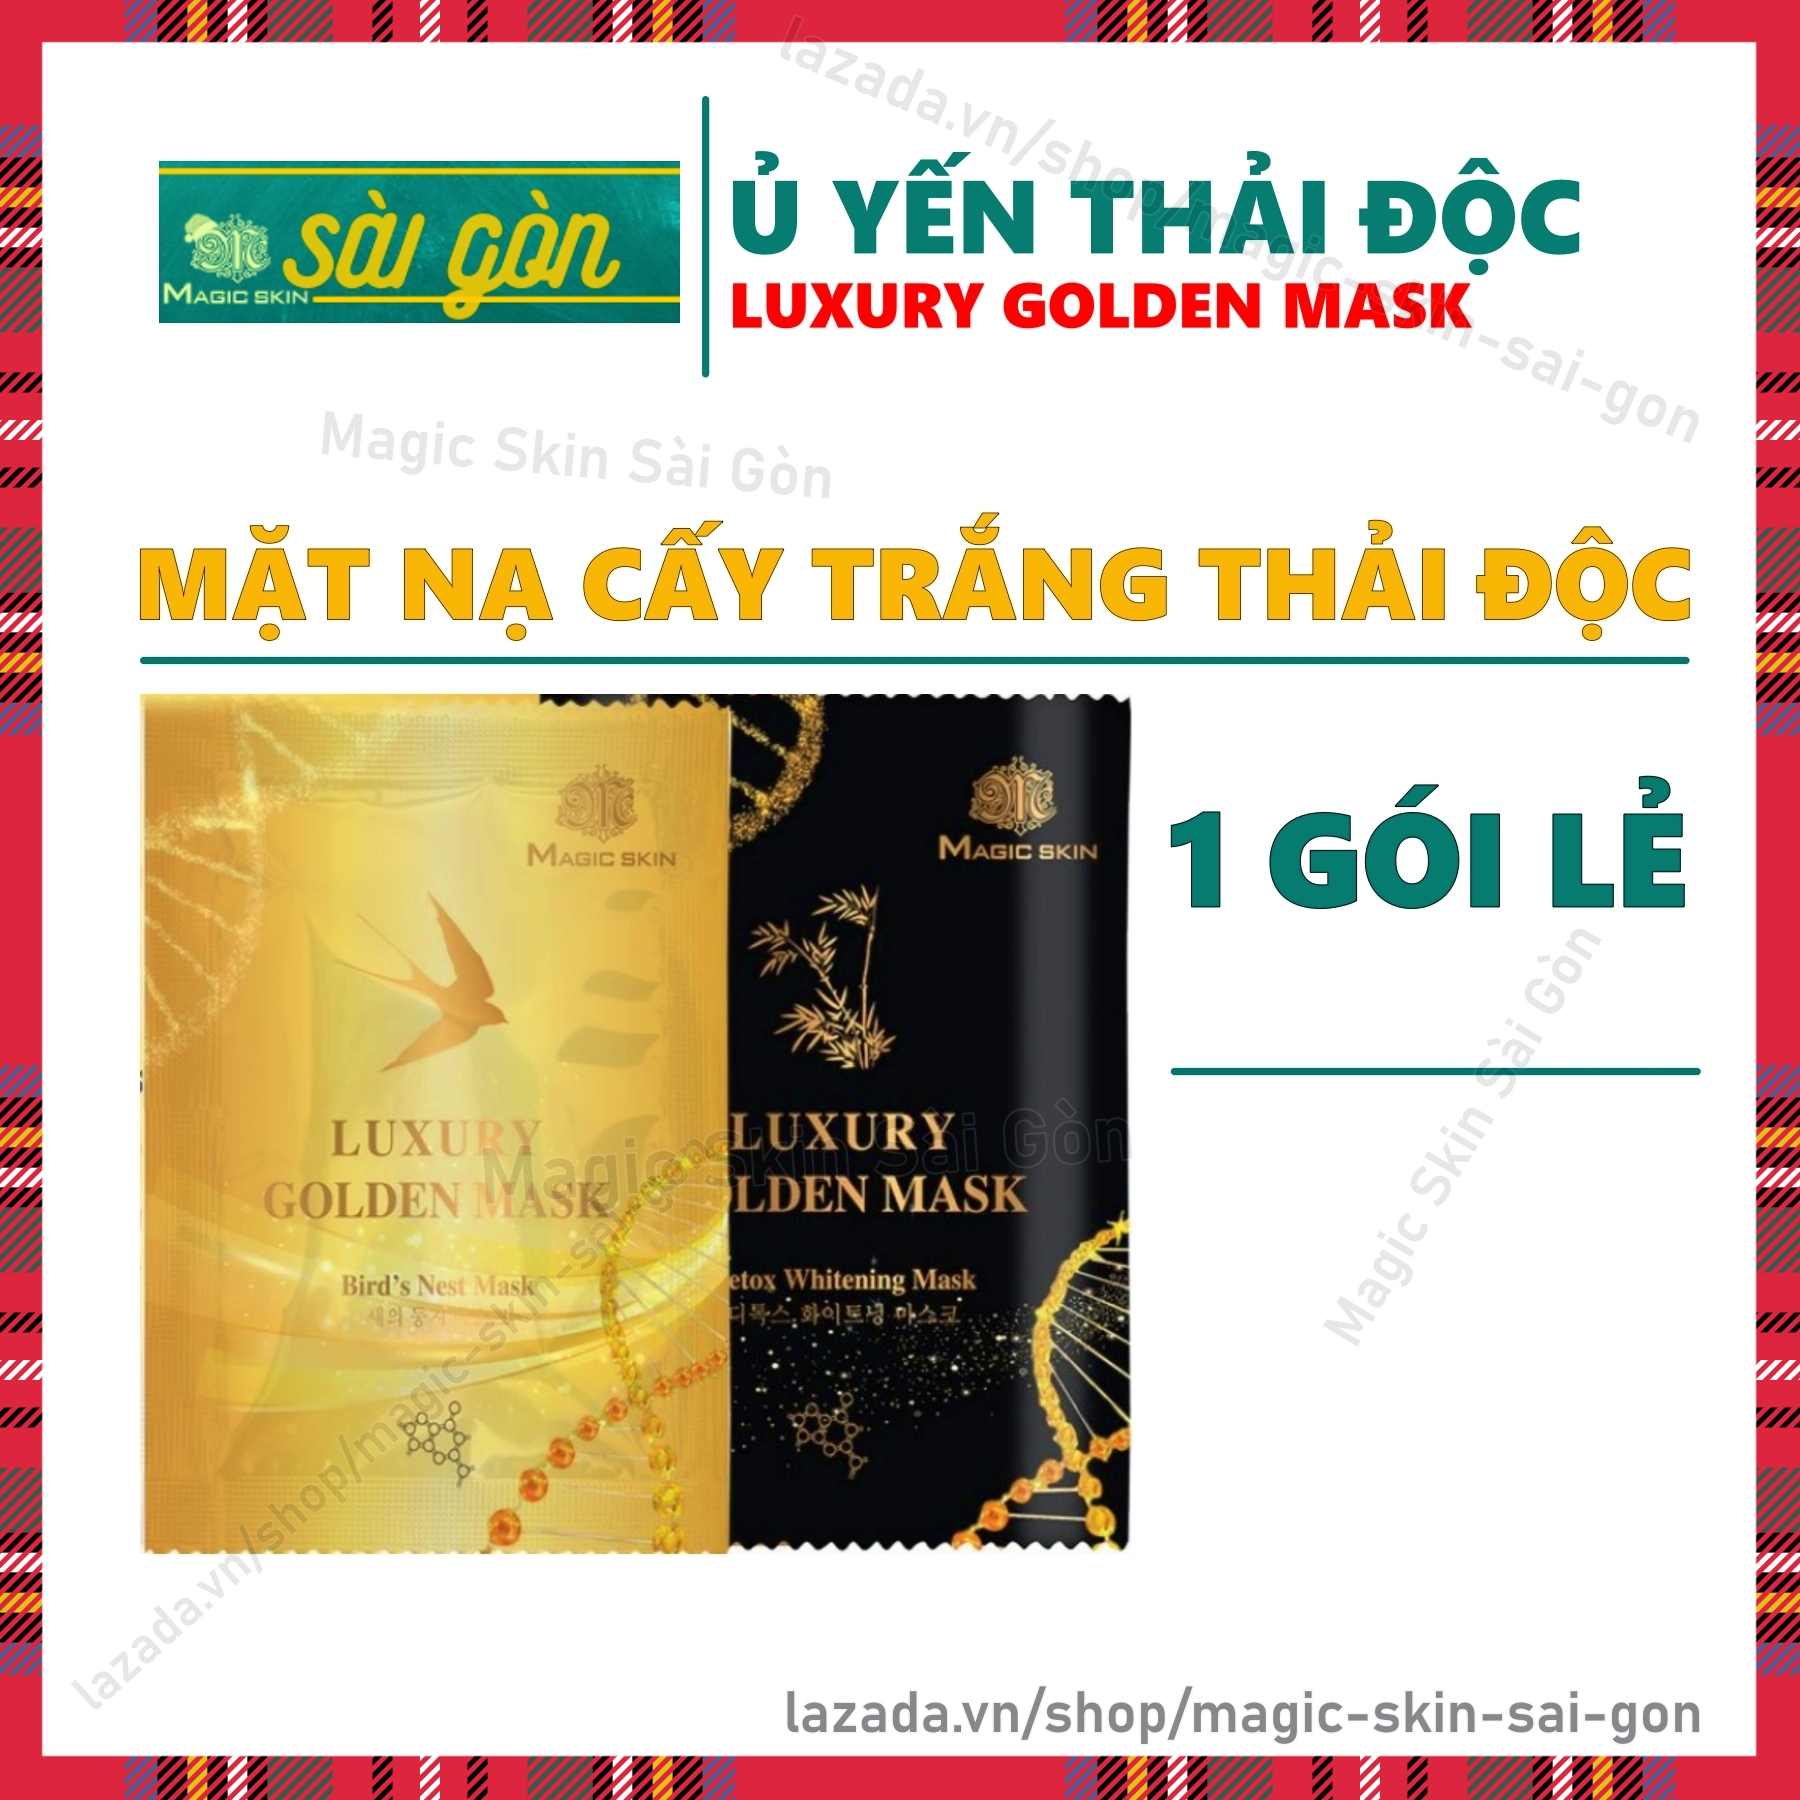 [01 GÓI LẺ] mặt nạ Ủ YẾN THẢI ĐỘC CẤY TRẮNG Luxury Golden Mask Magic Skin NÂNG TÔNG TRẮNG HỒNG